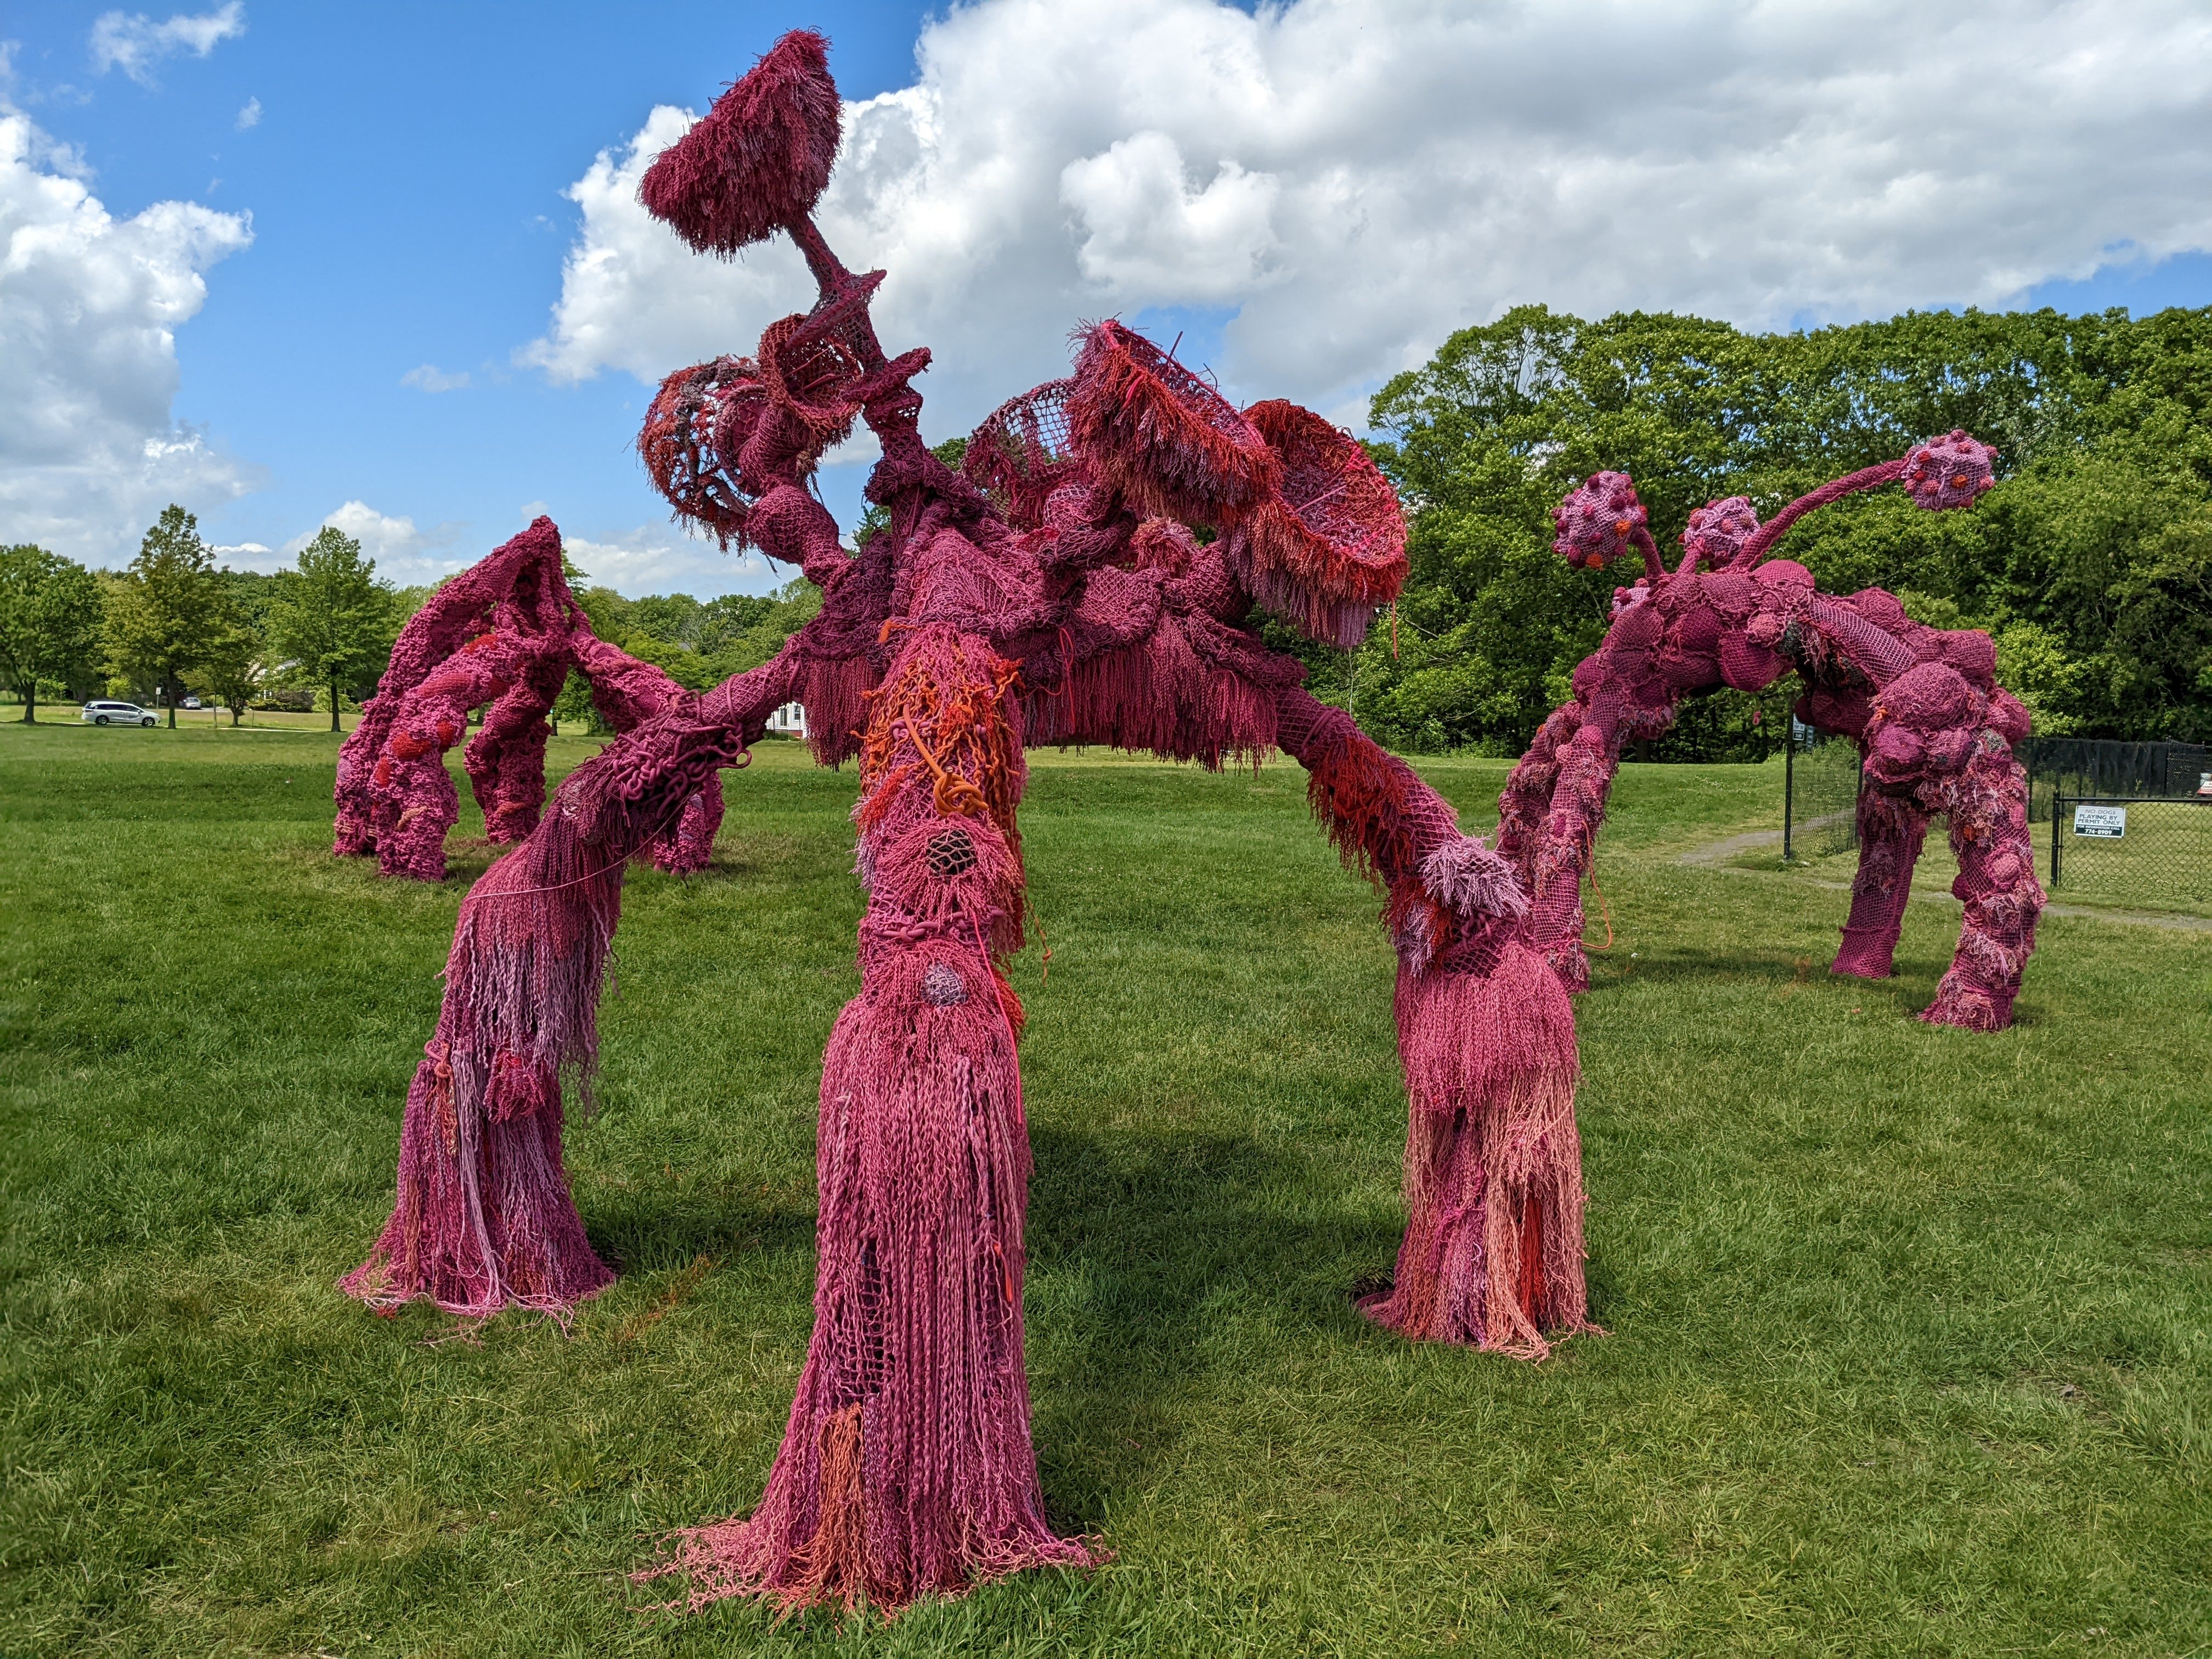 Sculpture at Payson Park